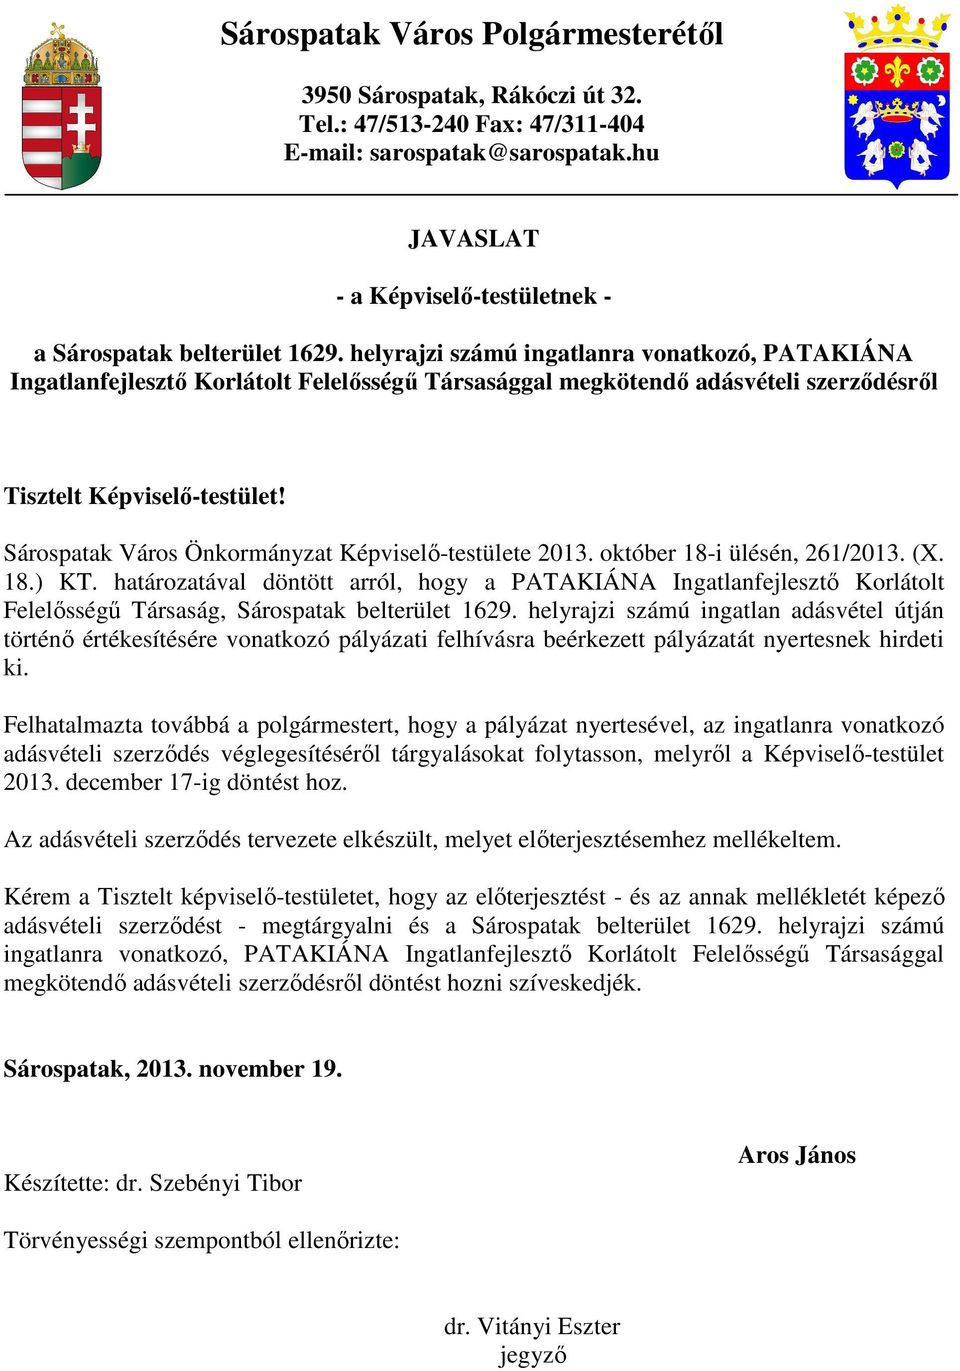 Sárospatak Város Önkormányzat Képviselı-testülete 2013. október 18-i ülésén, 261/2013. (X. 18.) KT.